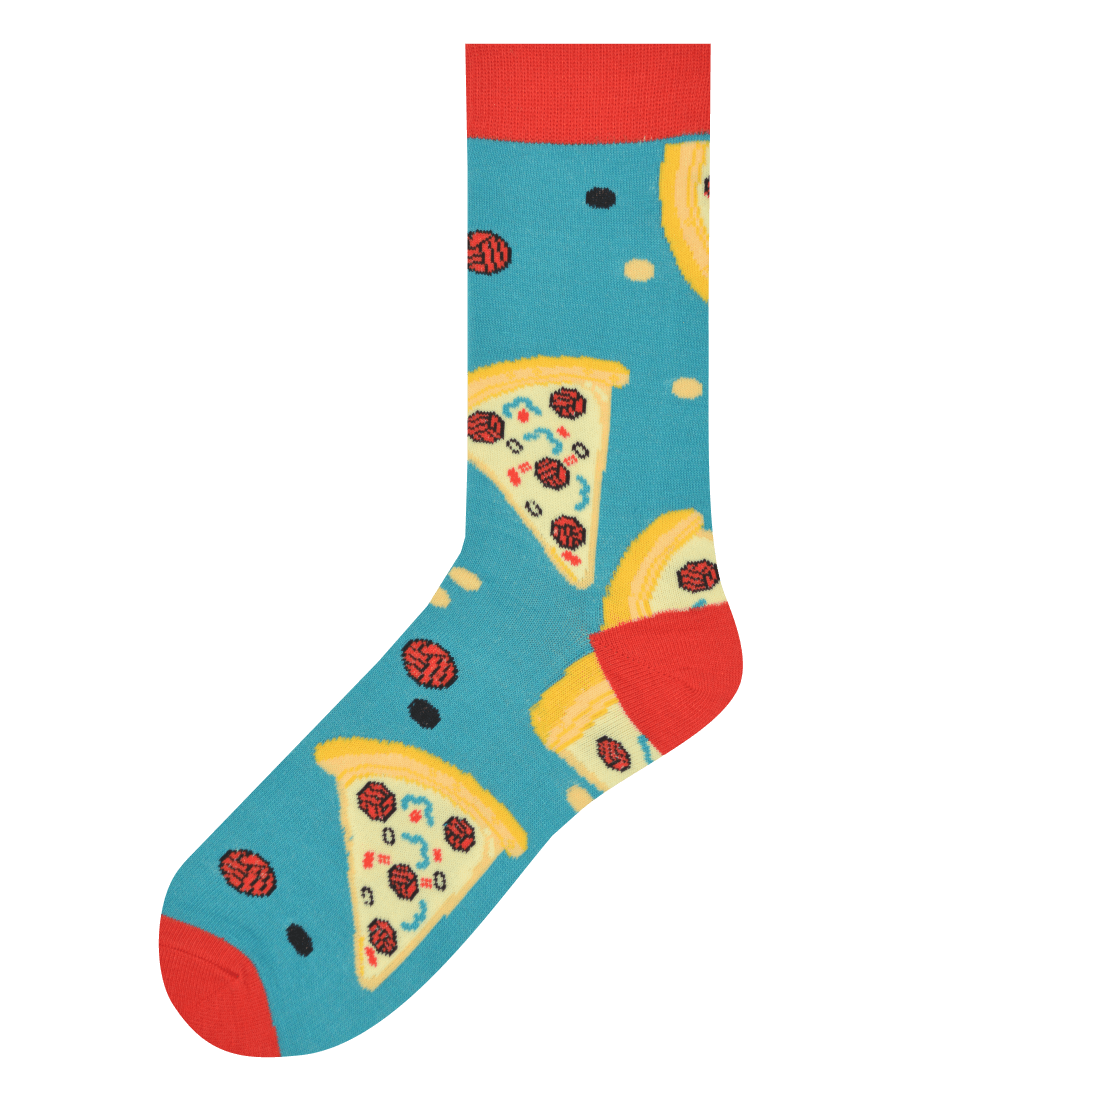 Medias Locas calcetines divertidos de pizza Freaky Socks. medias pizza